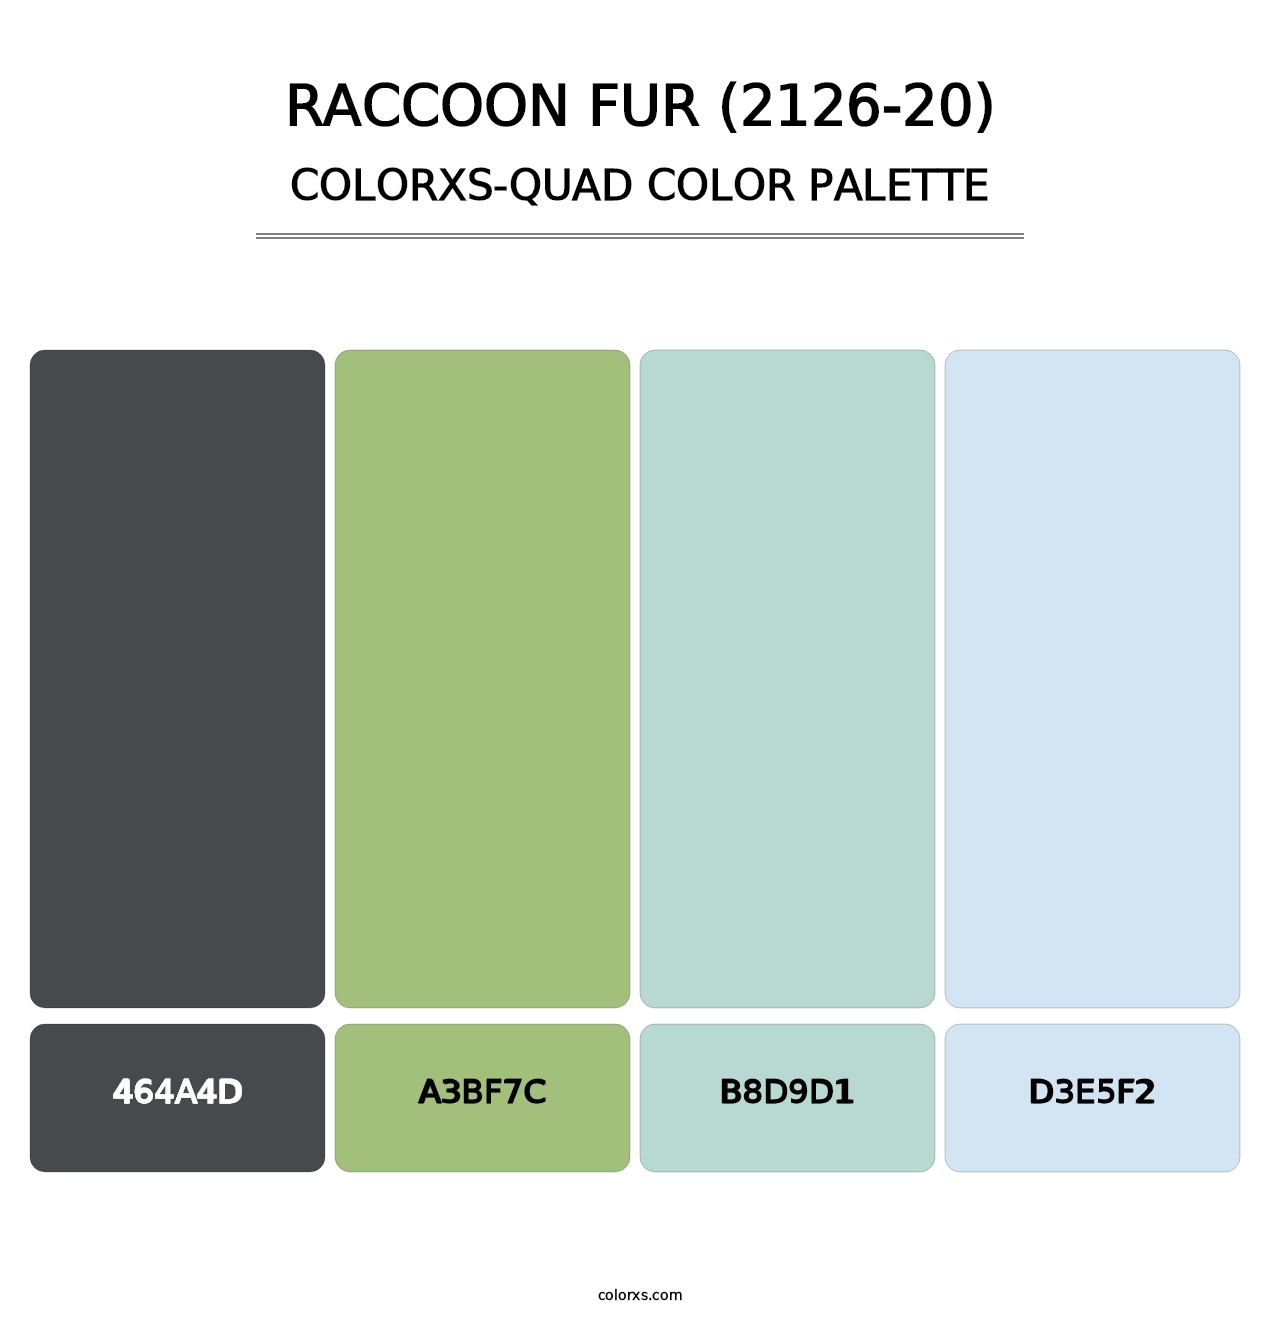 Raccoon Fur (2126-20) - Colorxs Quad Palette